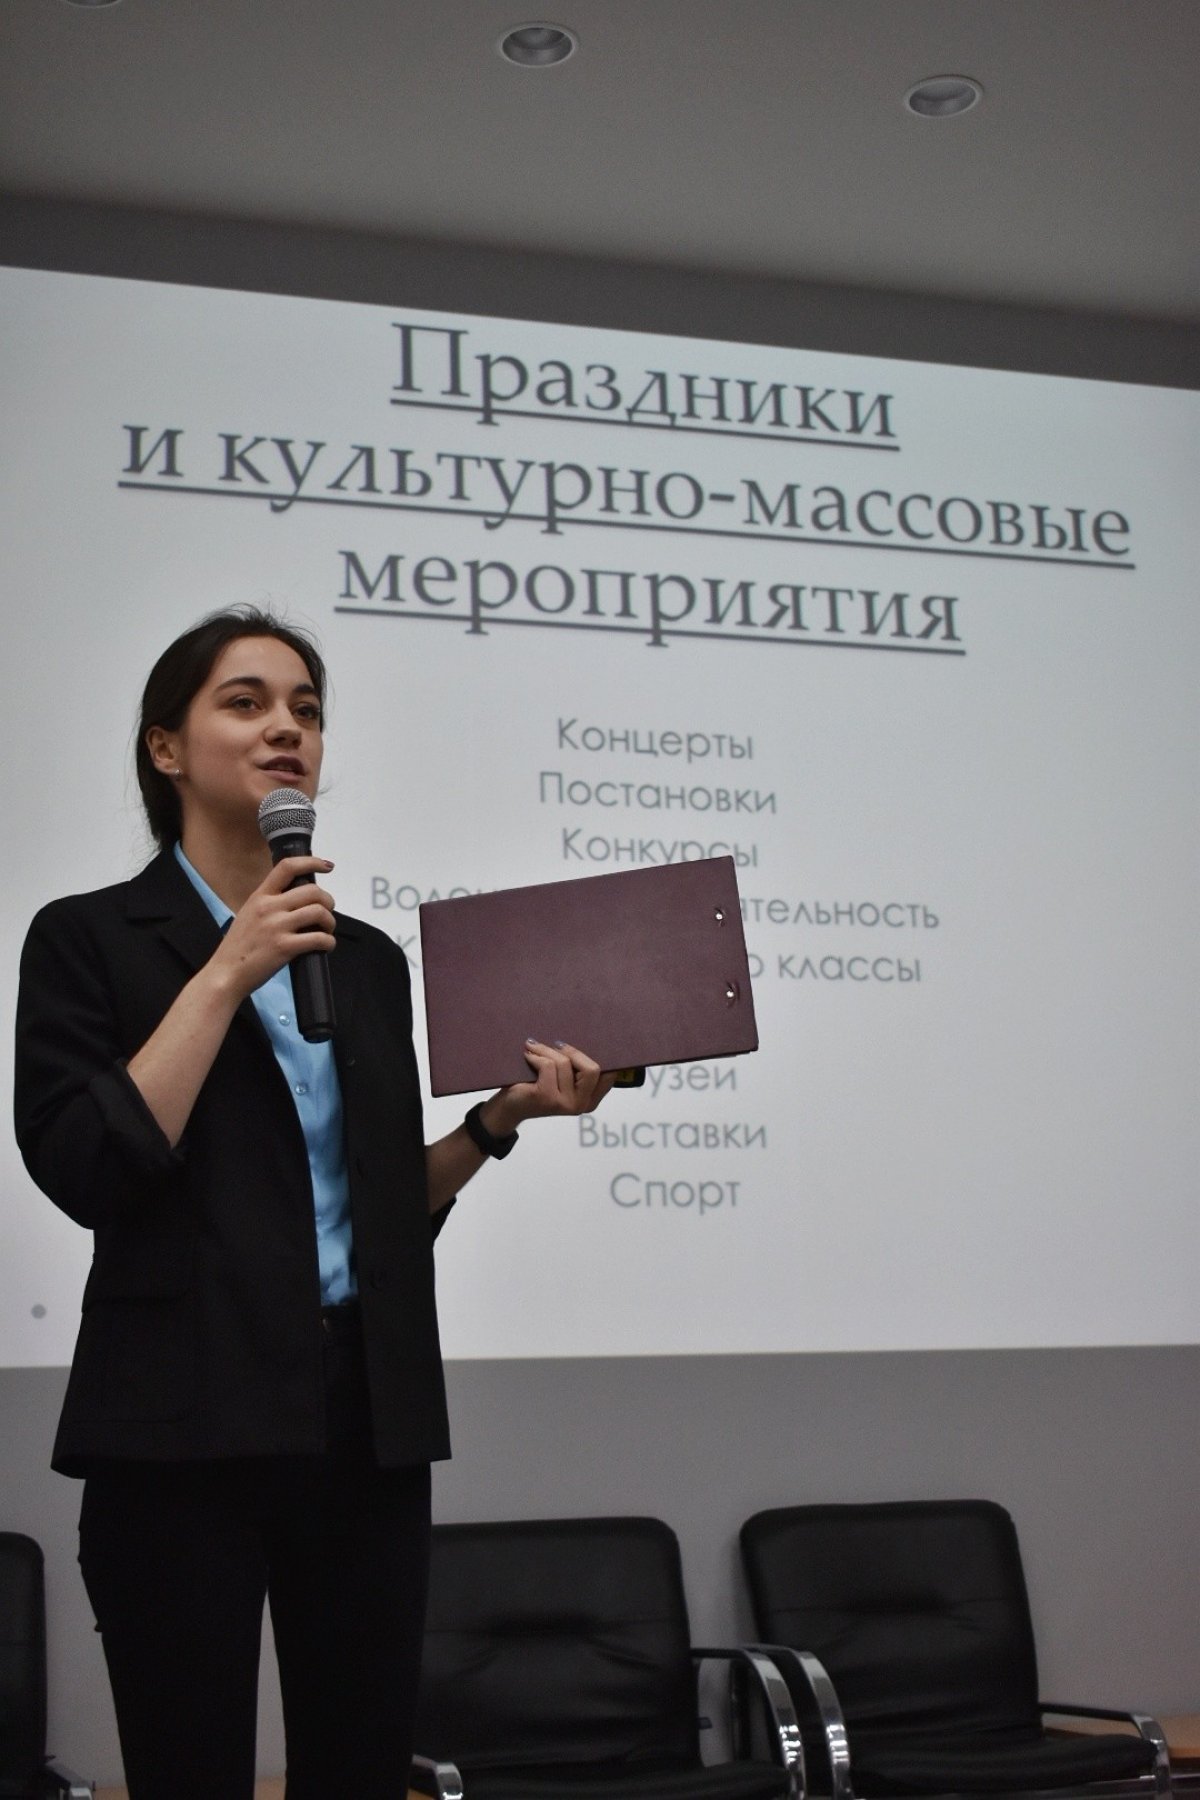 ❗❗❗По результатам голосования председателем студенческого совета становится Дымская Полина❗❗❗